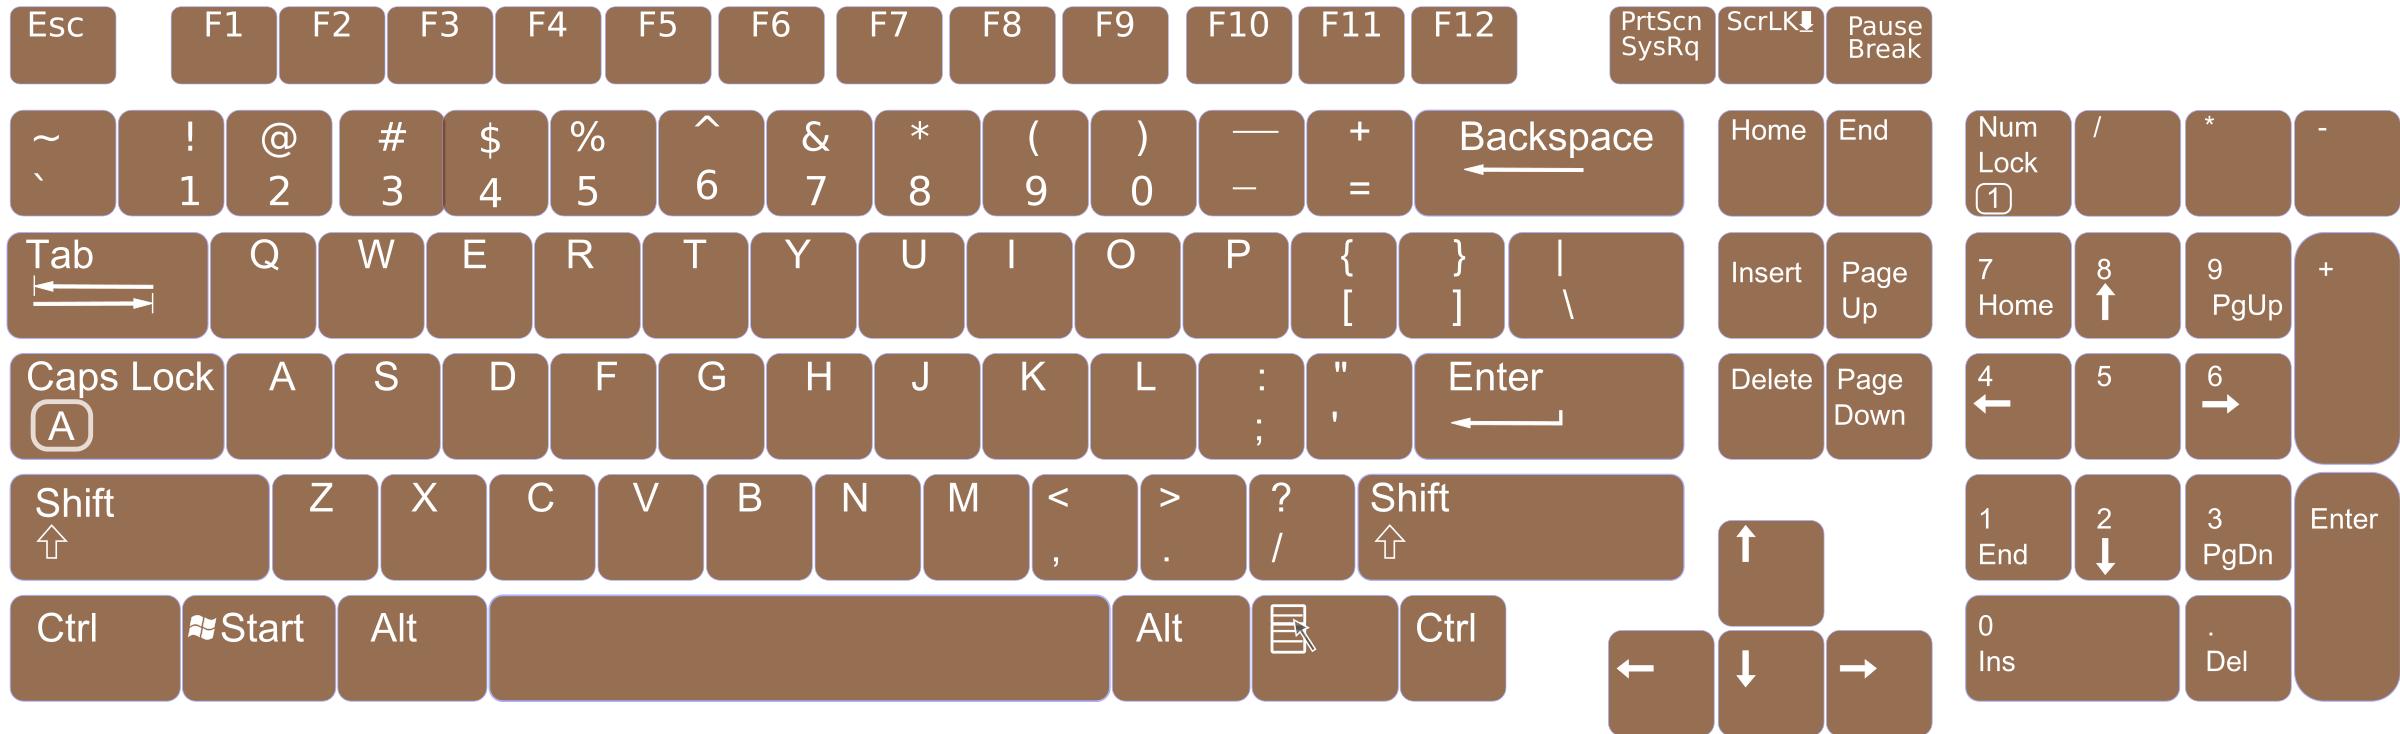 US English Keyboard Layout V0.1 png